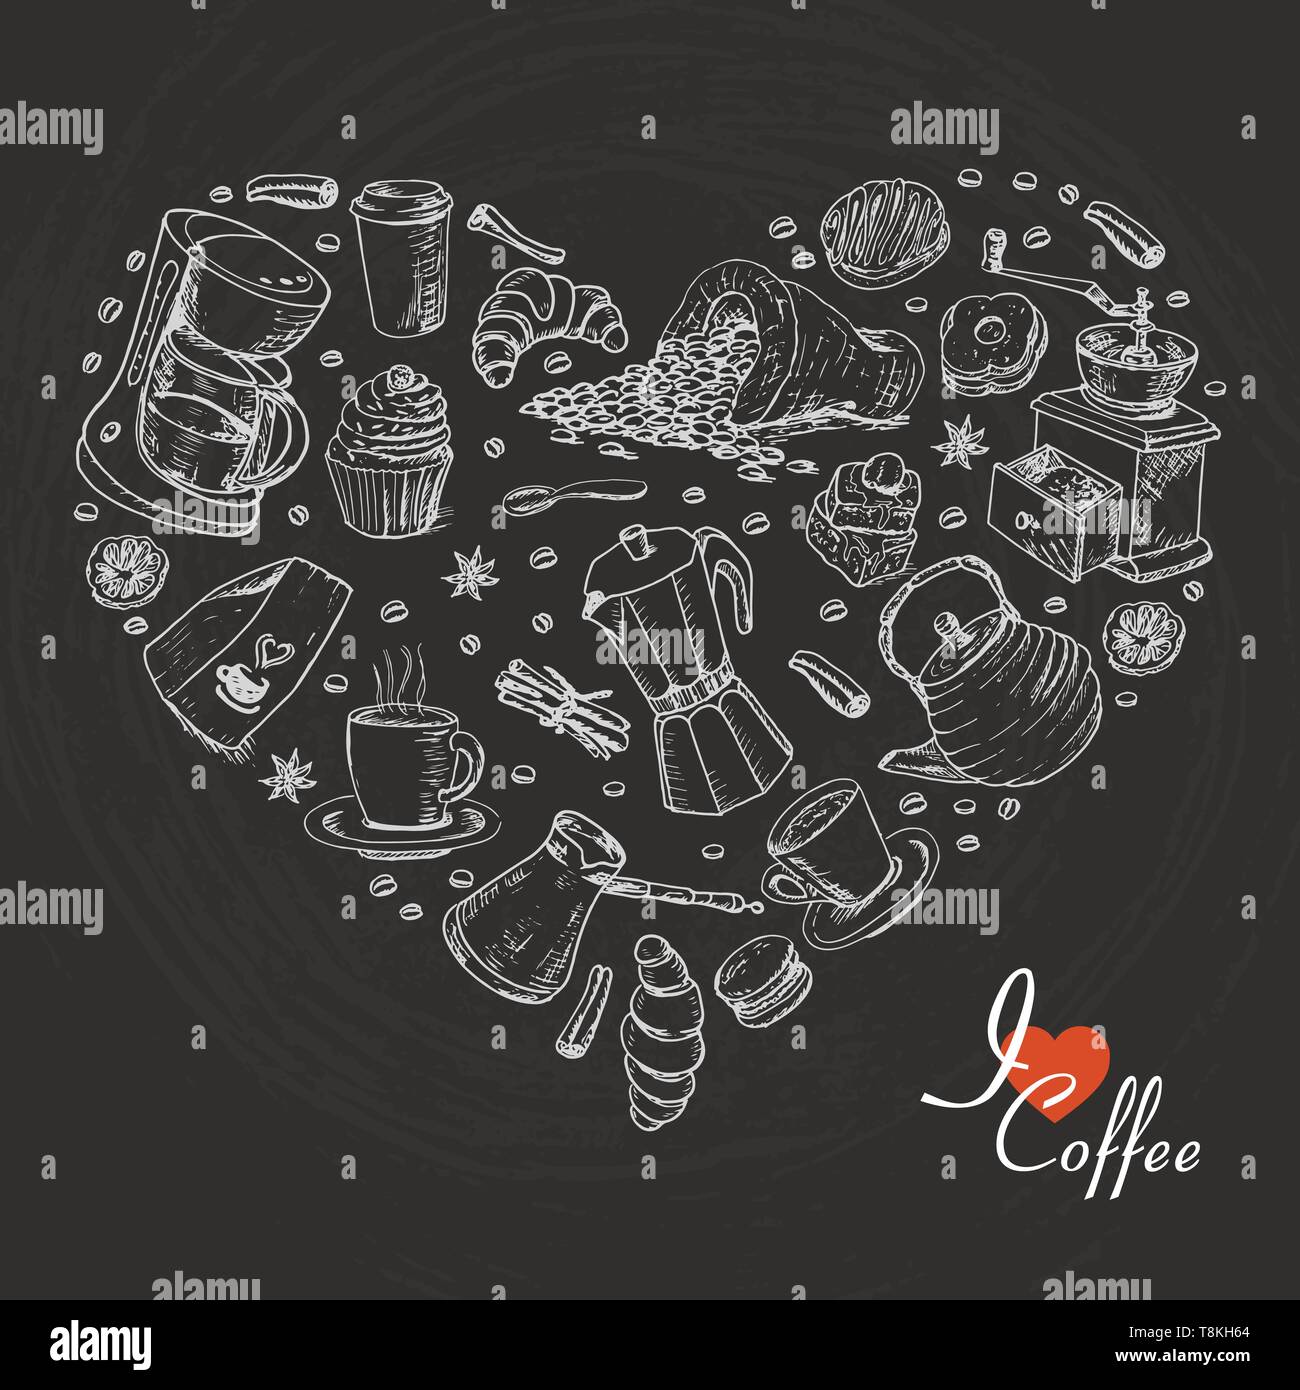 Il cuore isolato di caffè voci su sfondo nero. Illustrazione di vettore per il tuo design Illustrazione Vettoriale